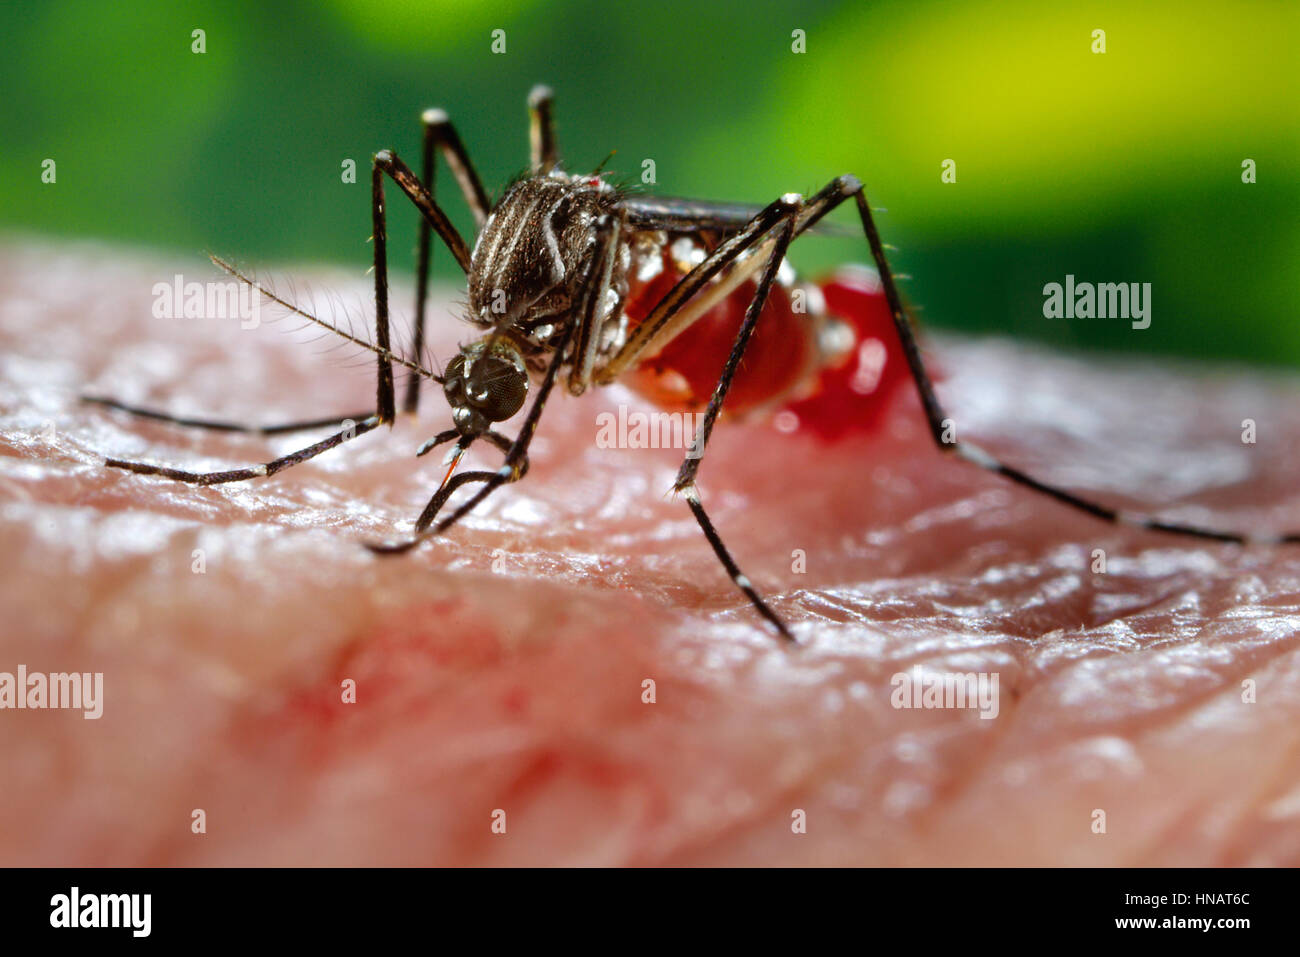 Eine weibliche Aedes Aegypti Mücke einfügen ihrer Faszikel durch die Hautoberfläche ihr Gastgeber.  Die Aedes Aegypti Mücke ist der primäre Vektor für die Übertragung der Flavivirus Dengue-Fieber (DF) und Dengue hämorrhagisches Fieber (DHF) verantwortlich, die Tag-beißen Aedes Aegypti Mücke bevorzugt auf ihre menschlichen Wirte ernähren. Aedes Aegypti spielt auch eine wichtige Rolle als Vektor für "Gelbfieber". Häufig anzutreffen Sie in seiner tropischen Umgebung, die weiß gebänderten Markierungen auf die tarsal Segmente seiner gegliederte Beine, obwohl es als Aedes Aegypti, zu unterscheiden sind ähnlich wie einige andere Mückenarten. Stockfoto